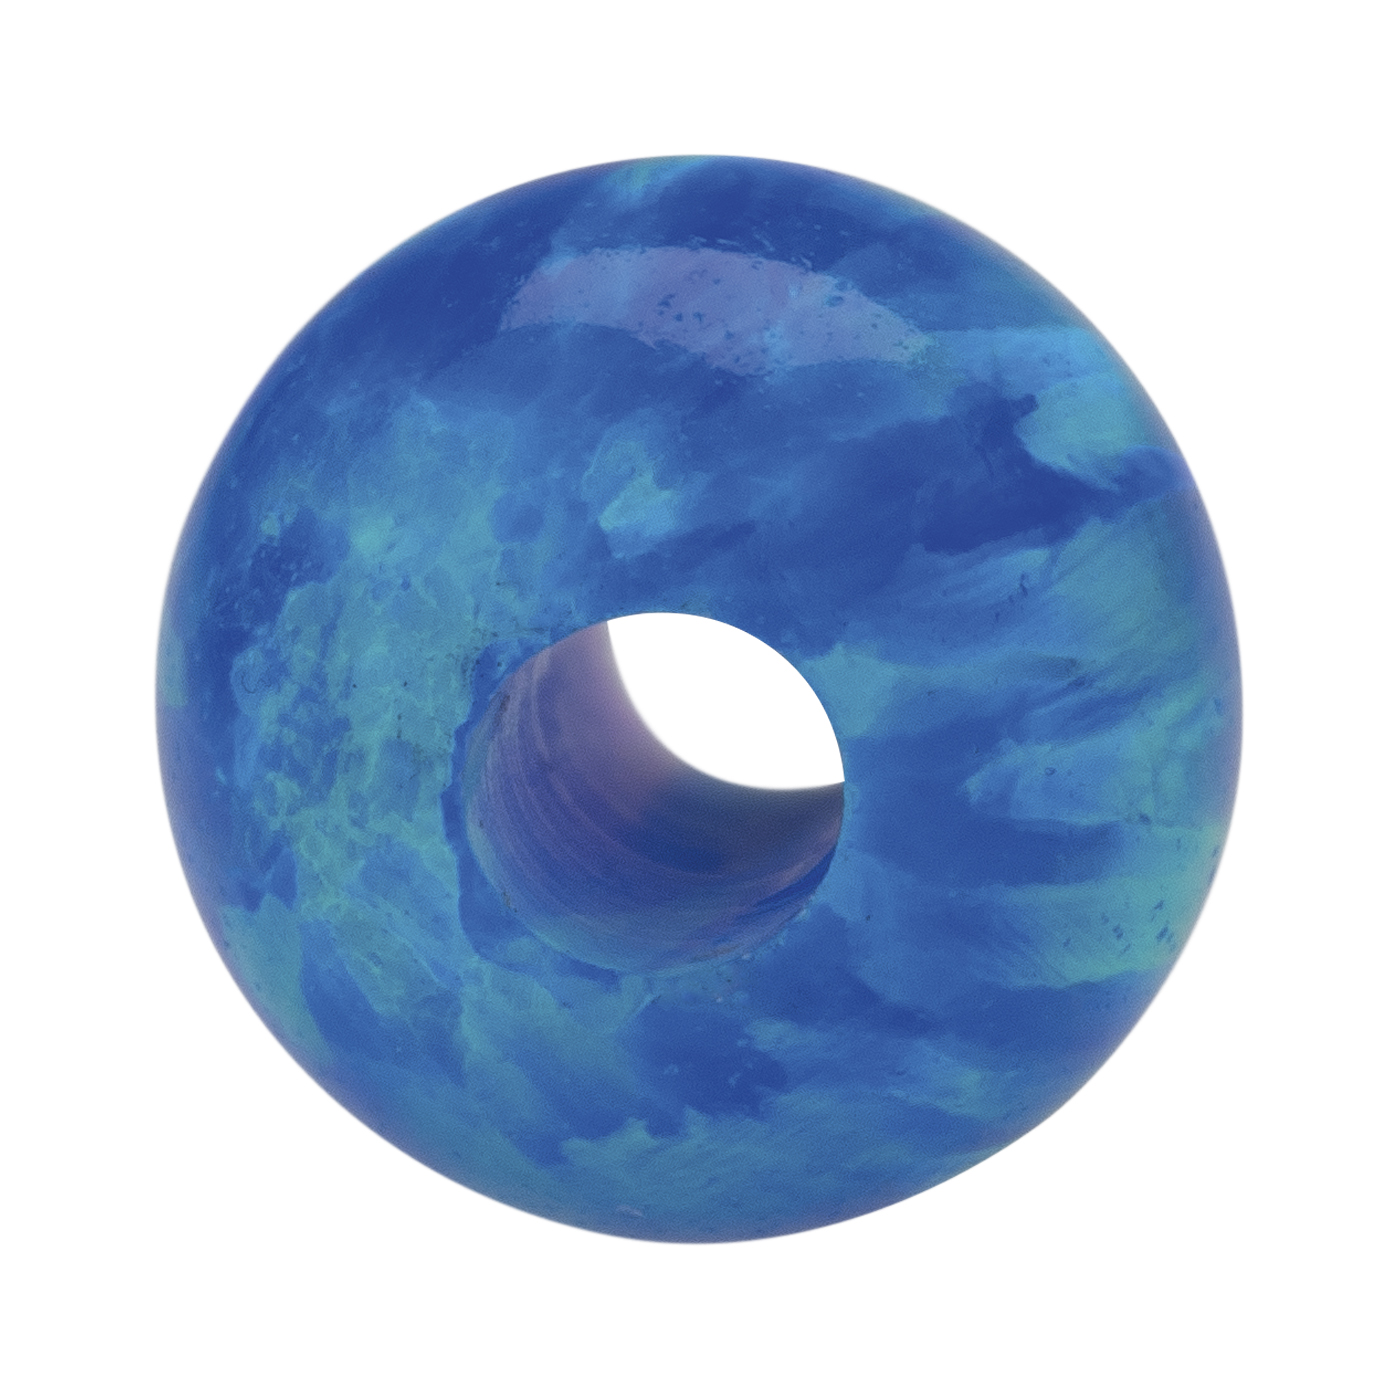 Opal Imitation Ball, Blue, ø 10 mm, Drilled Through - 1 piece